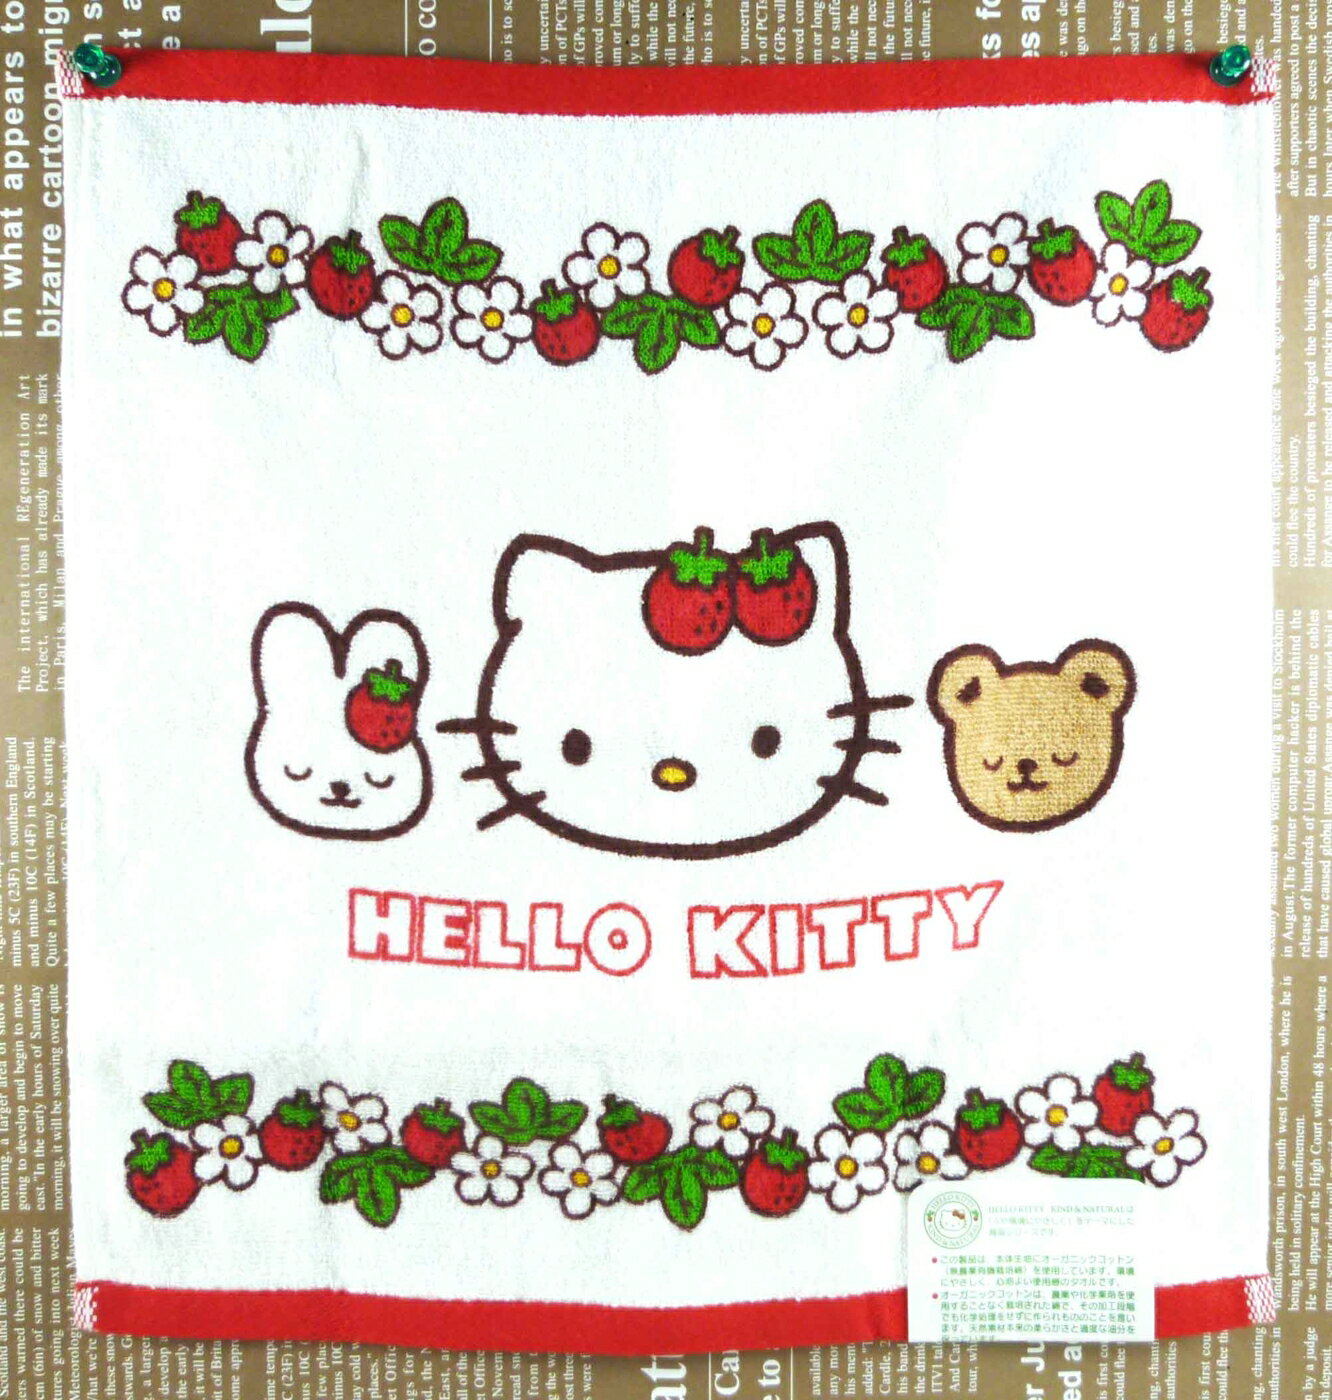 【震撼精品百貨】Hello Kitty 凱蒂貓 中方巾 環保草莓 震撼日式精品百貨